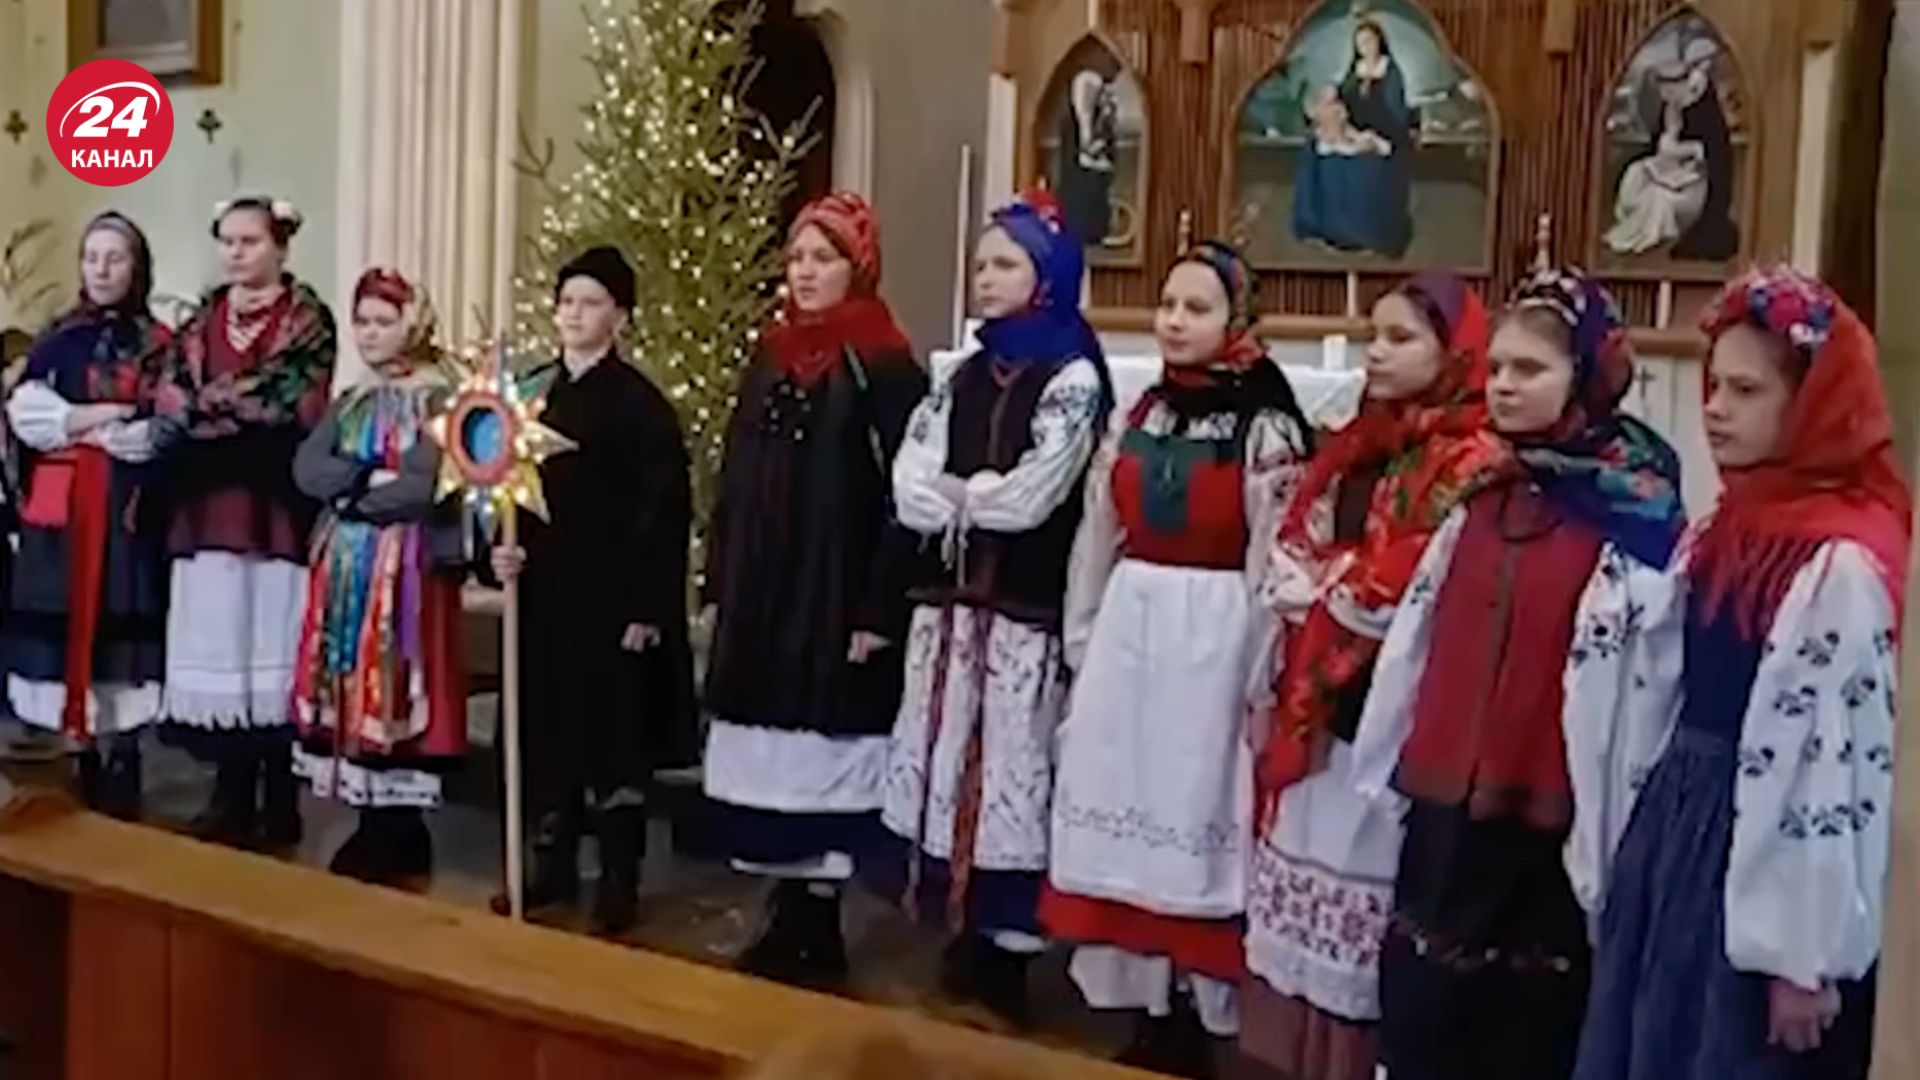 Колядки на украинском языке пели на конкурсе в Ялте